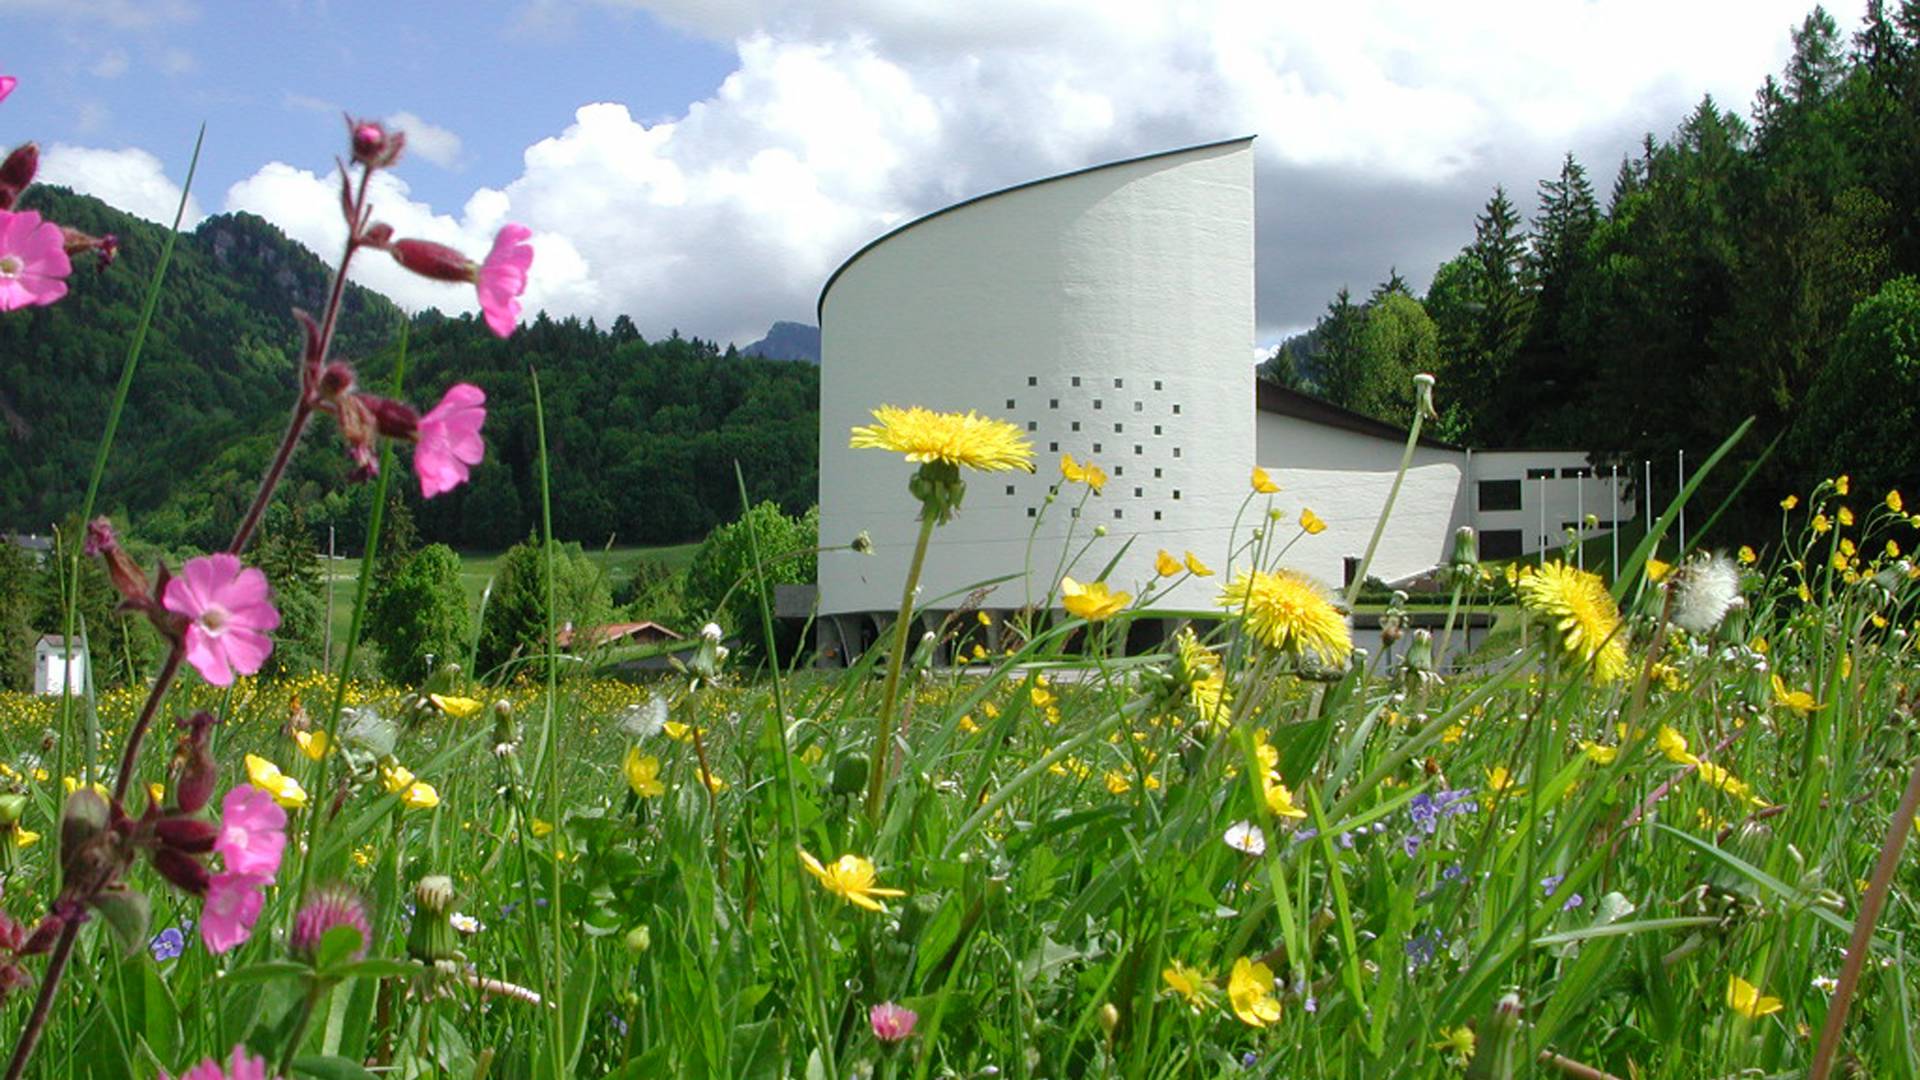 Blumen vor dem Festspielhaus in Erl, Tirol